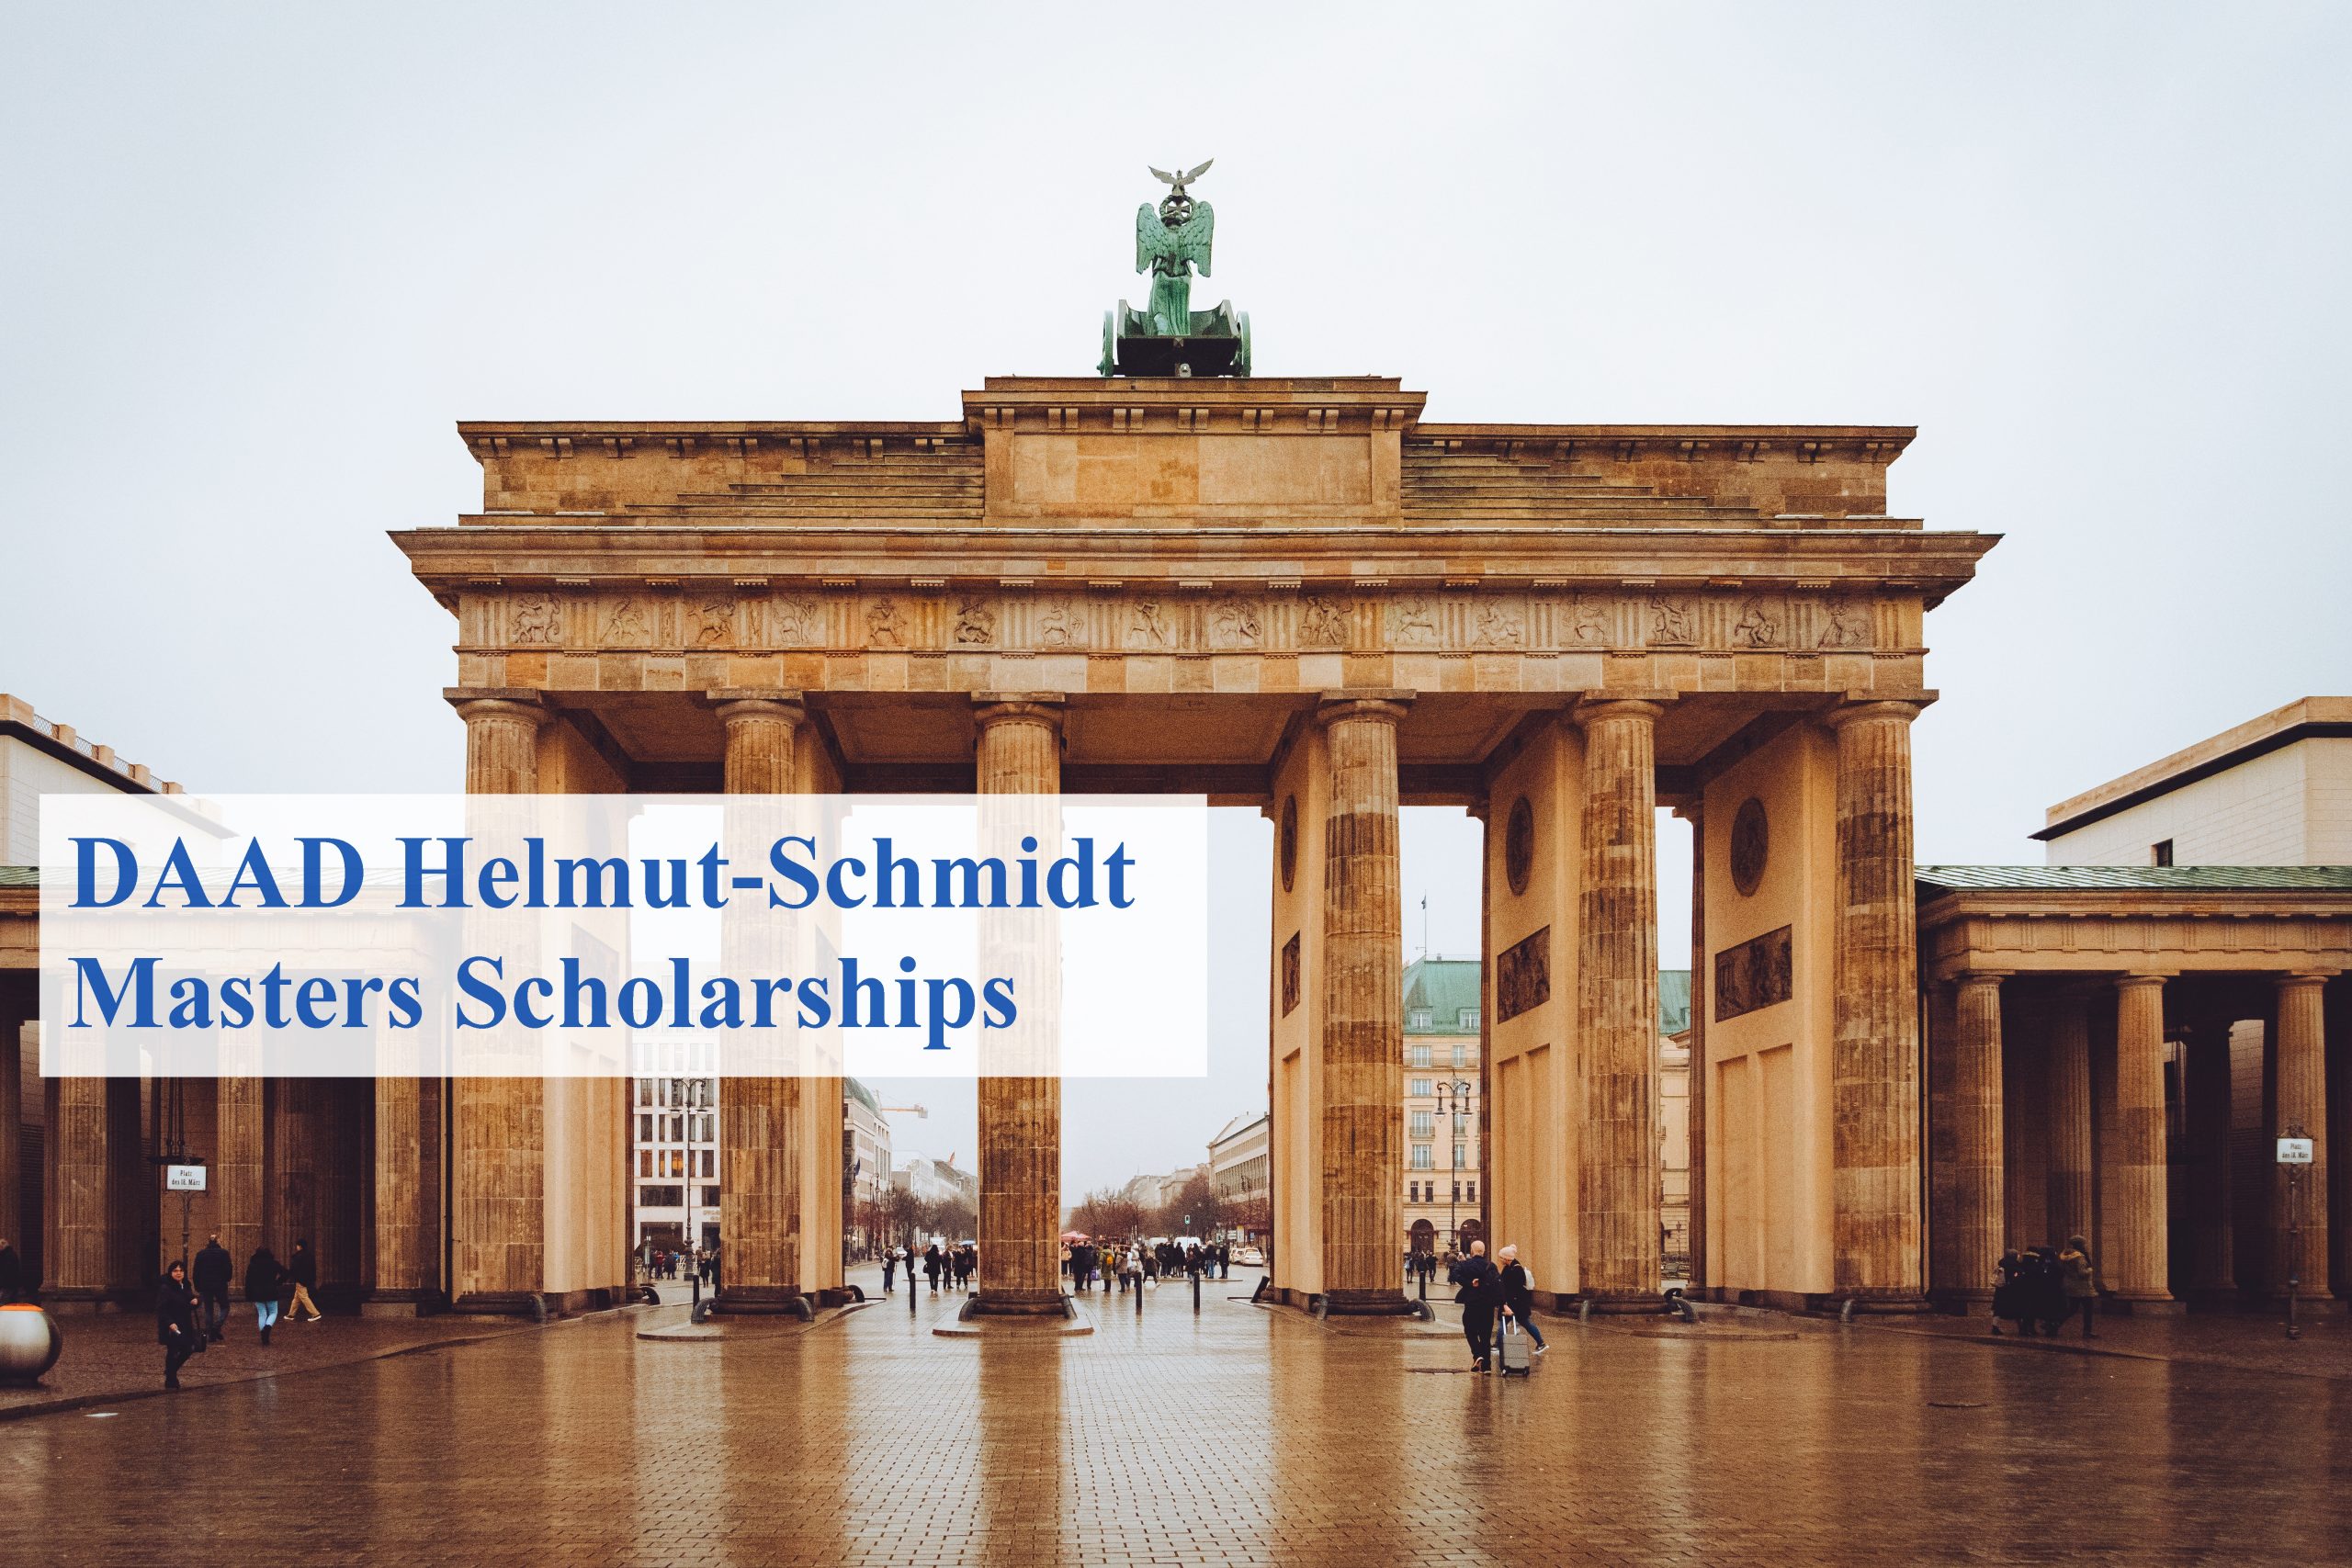 DAAD Helmut-Schmidt Masters Scholarships